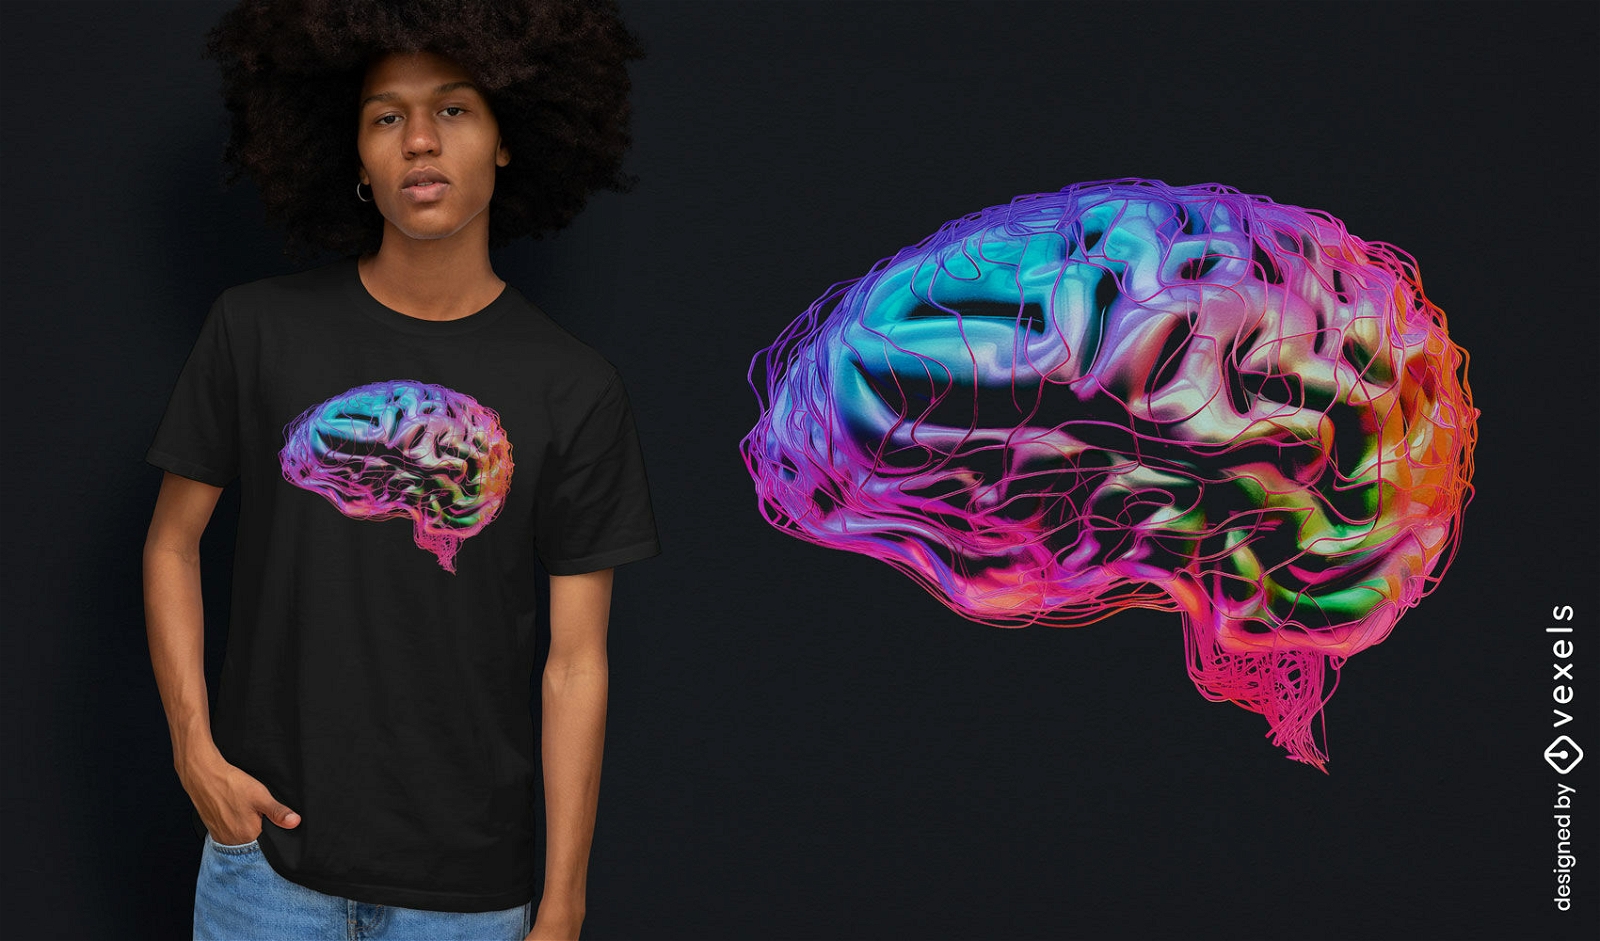 Dise?o de camiseta colorida de arte cerebral.